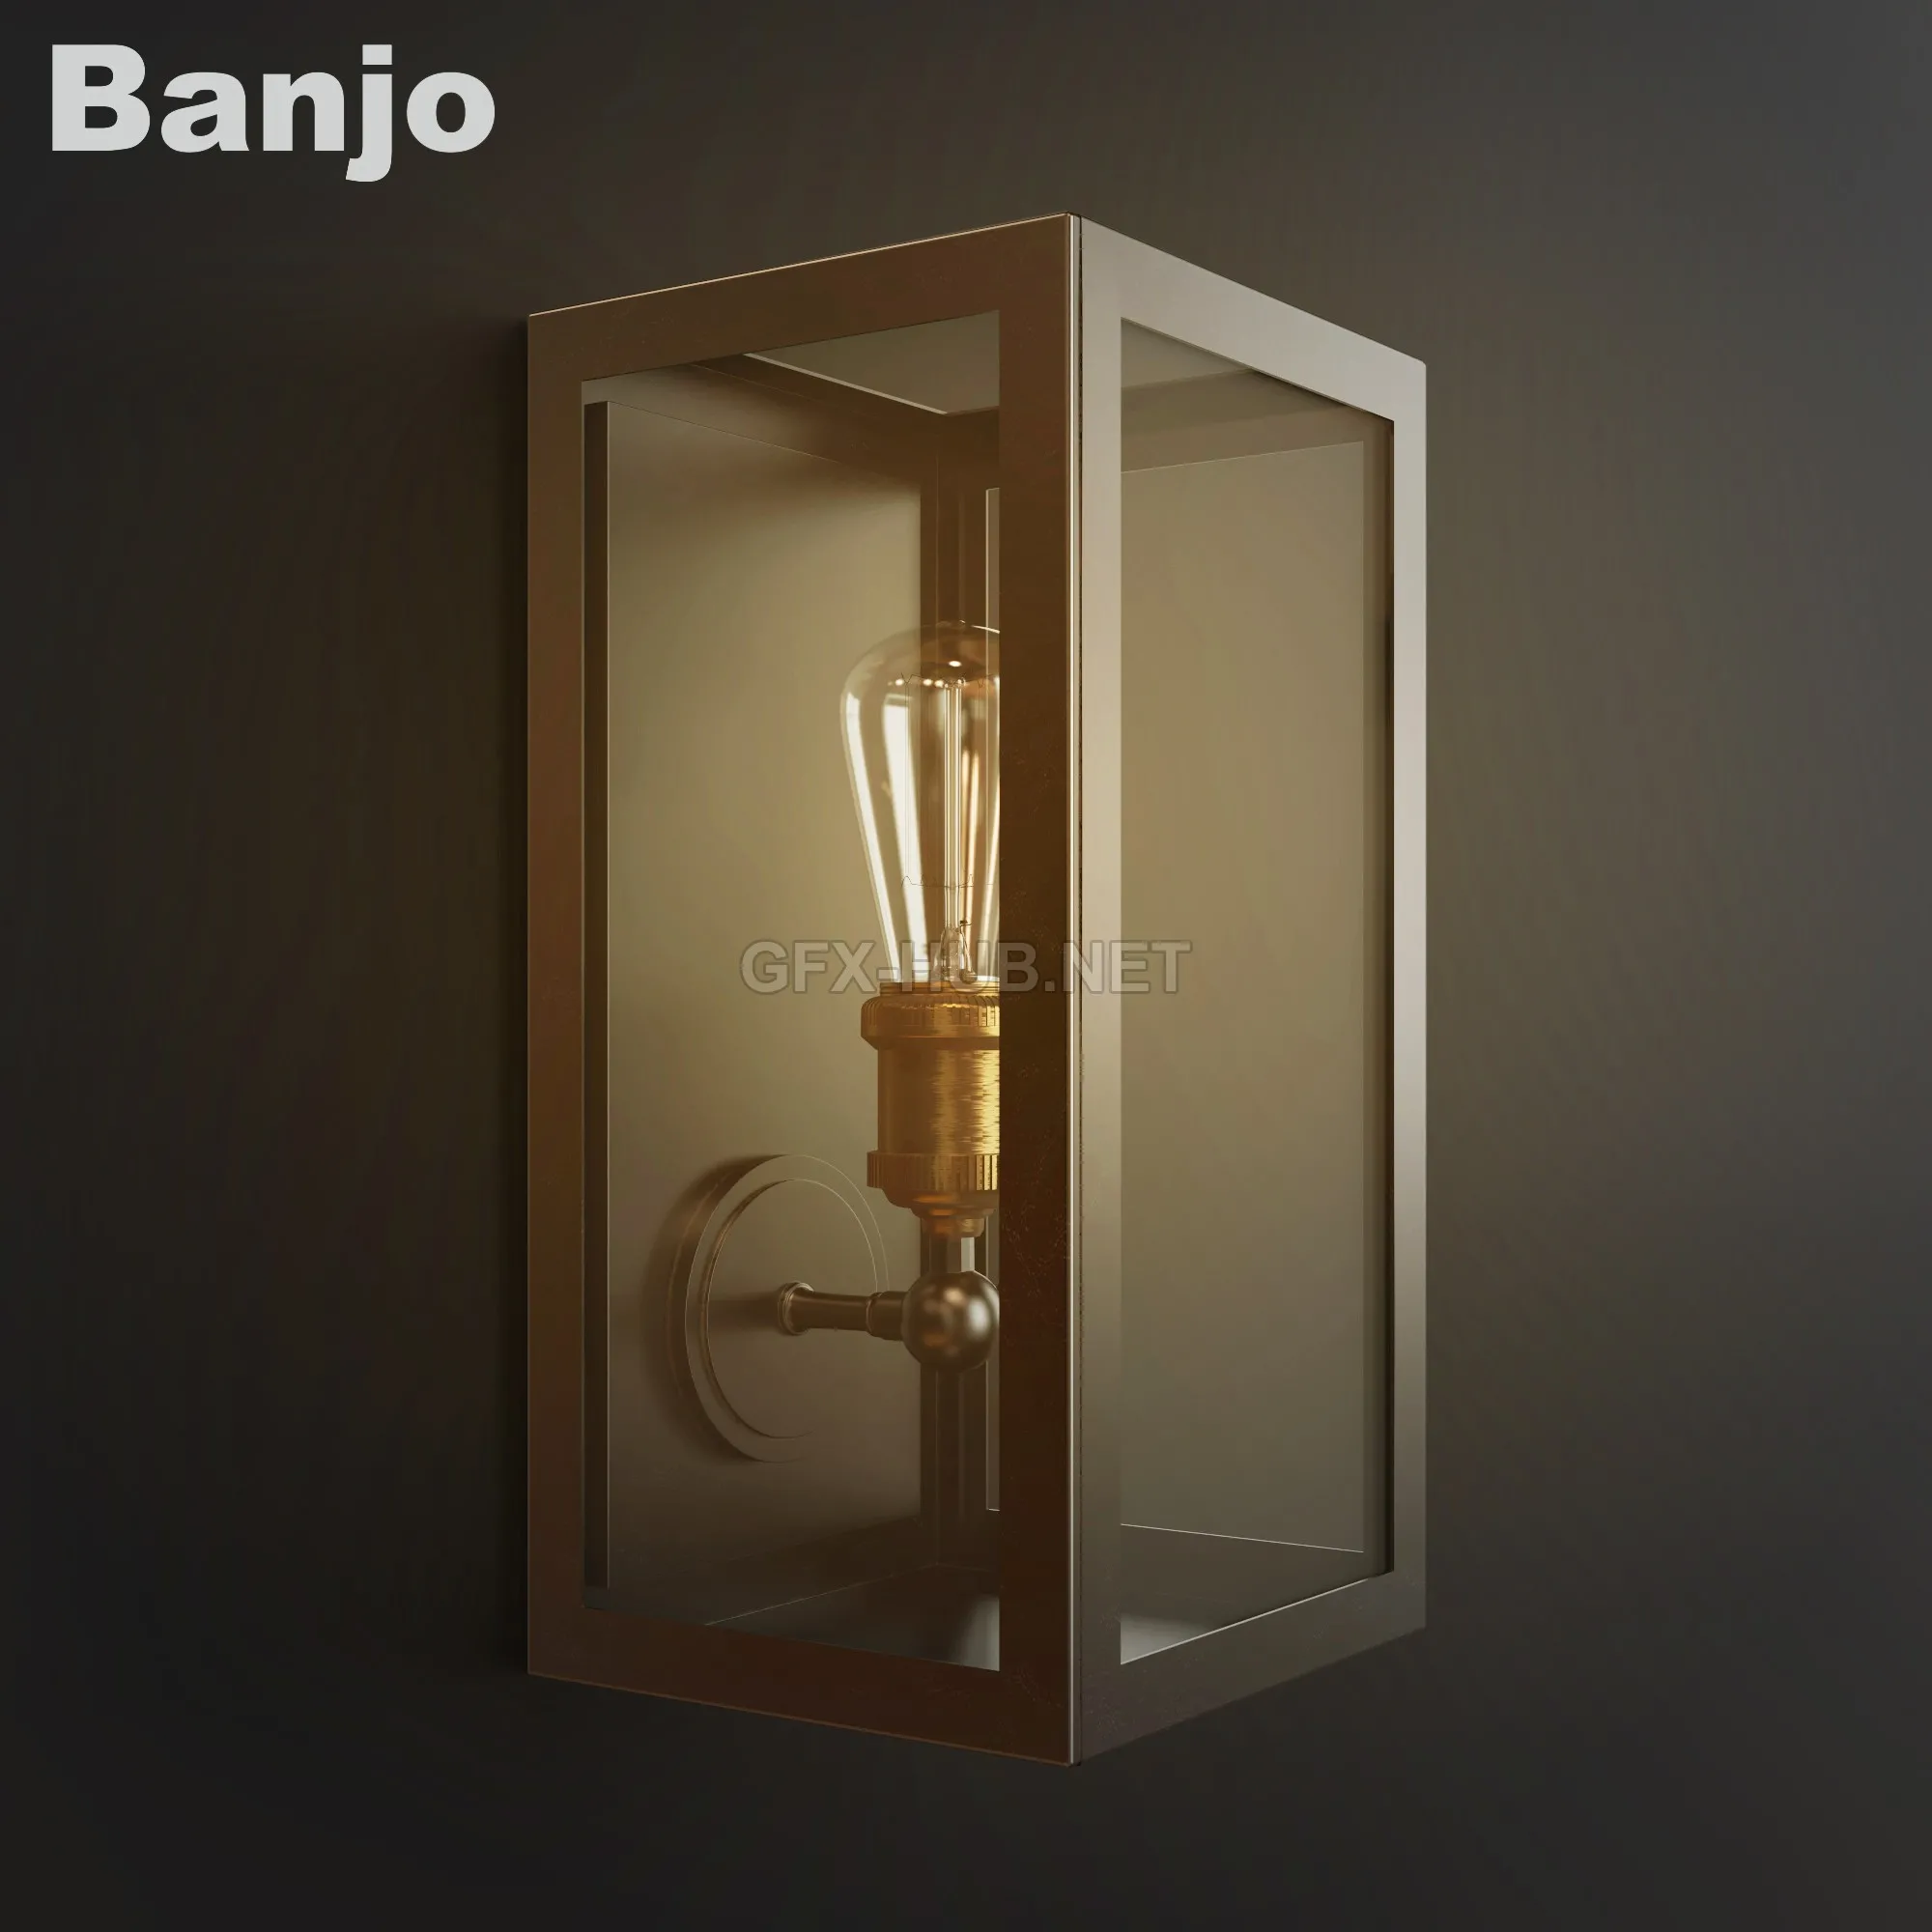 Banjo wall lamp – 207061